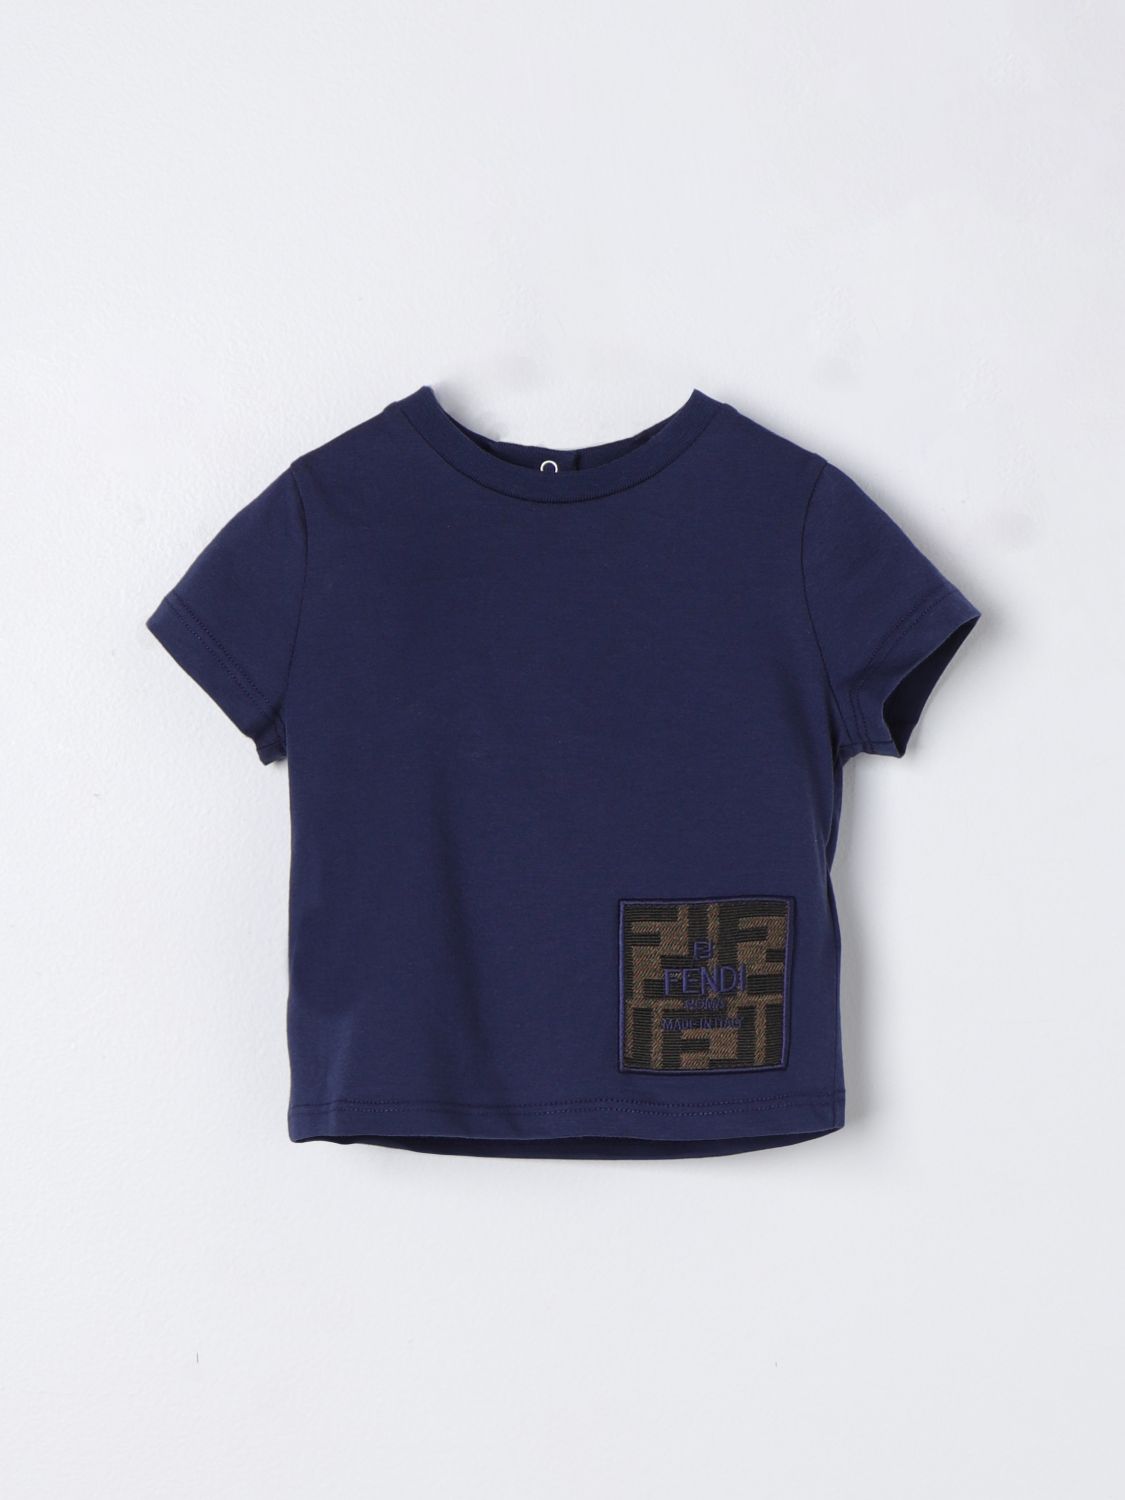 Fendi Babies' T-shirt  Kids Kids Color Blue